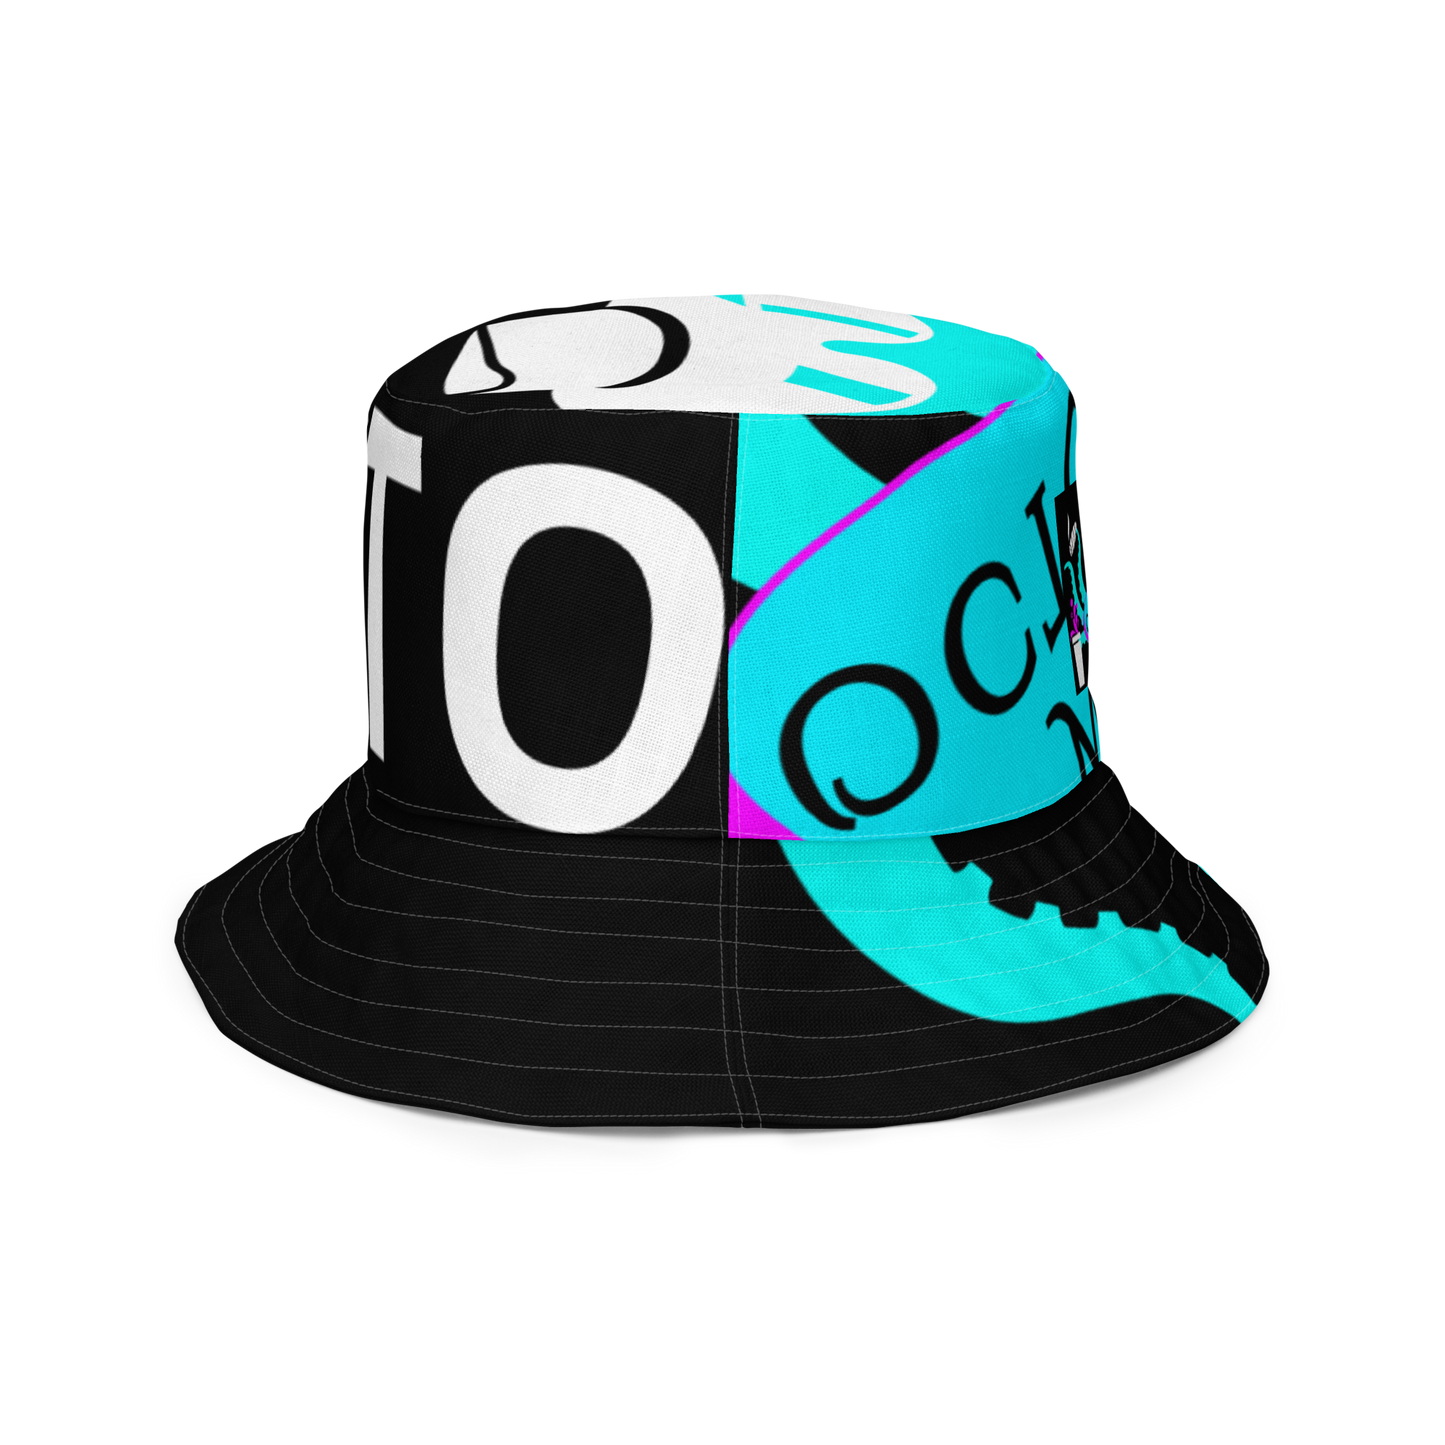 Octo. Mafia "flip the script" reversible bucket hat